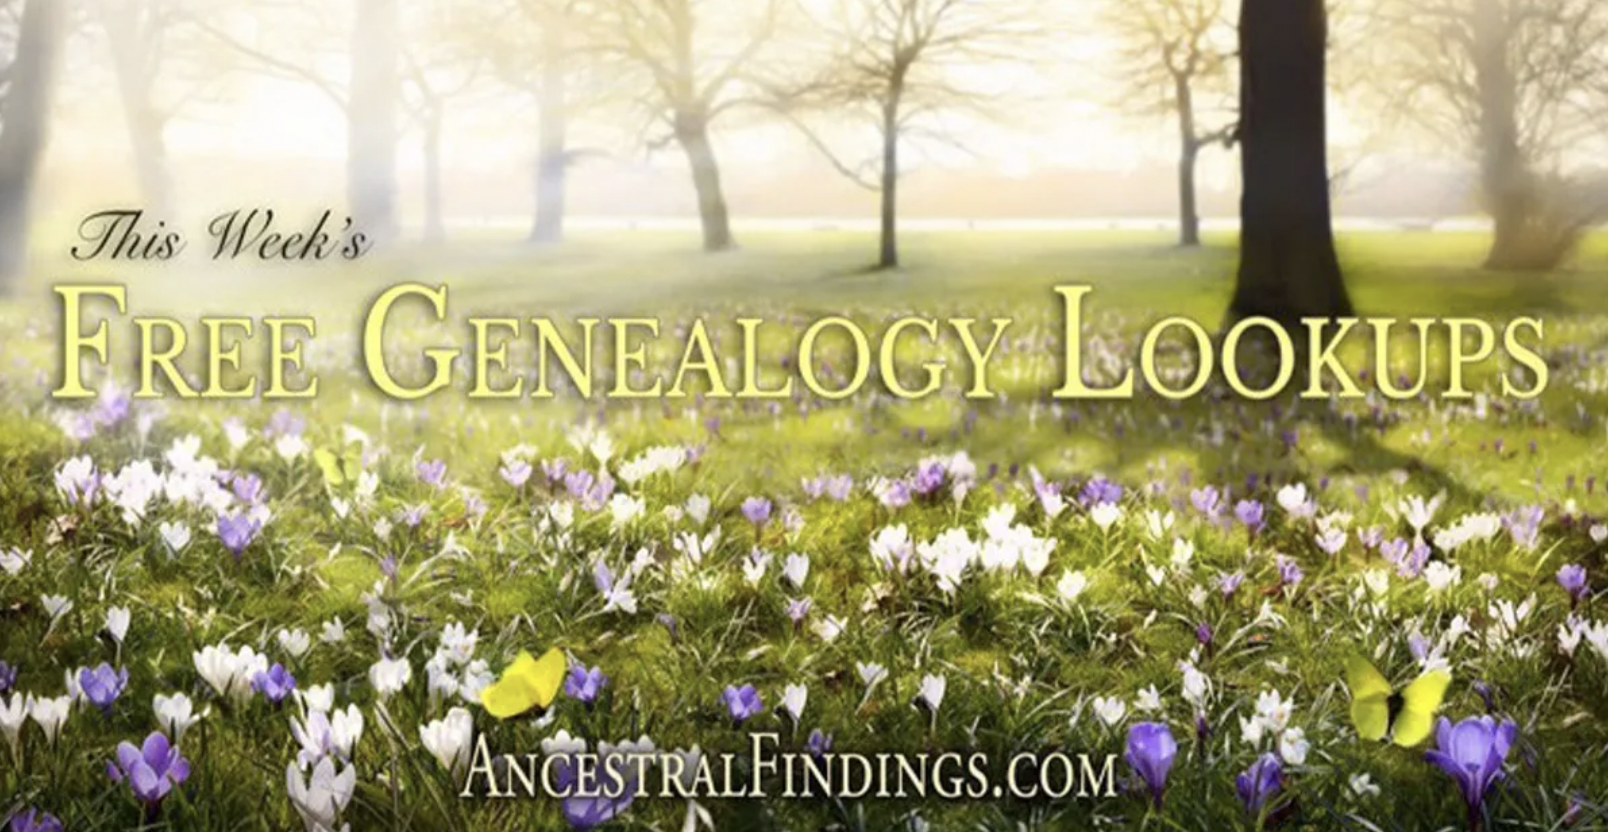 This Week’s Free Genealogy Lookups